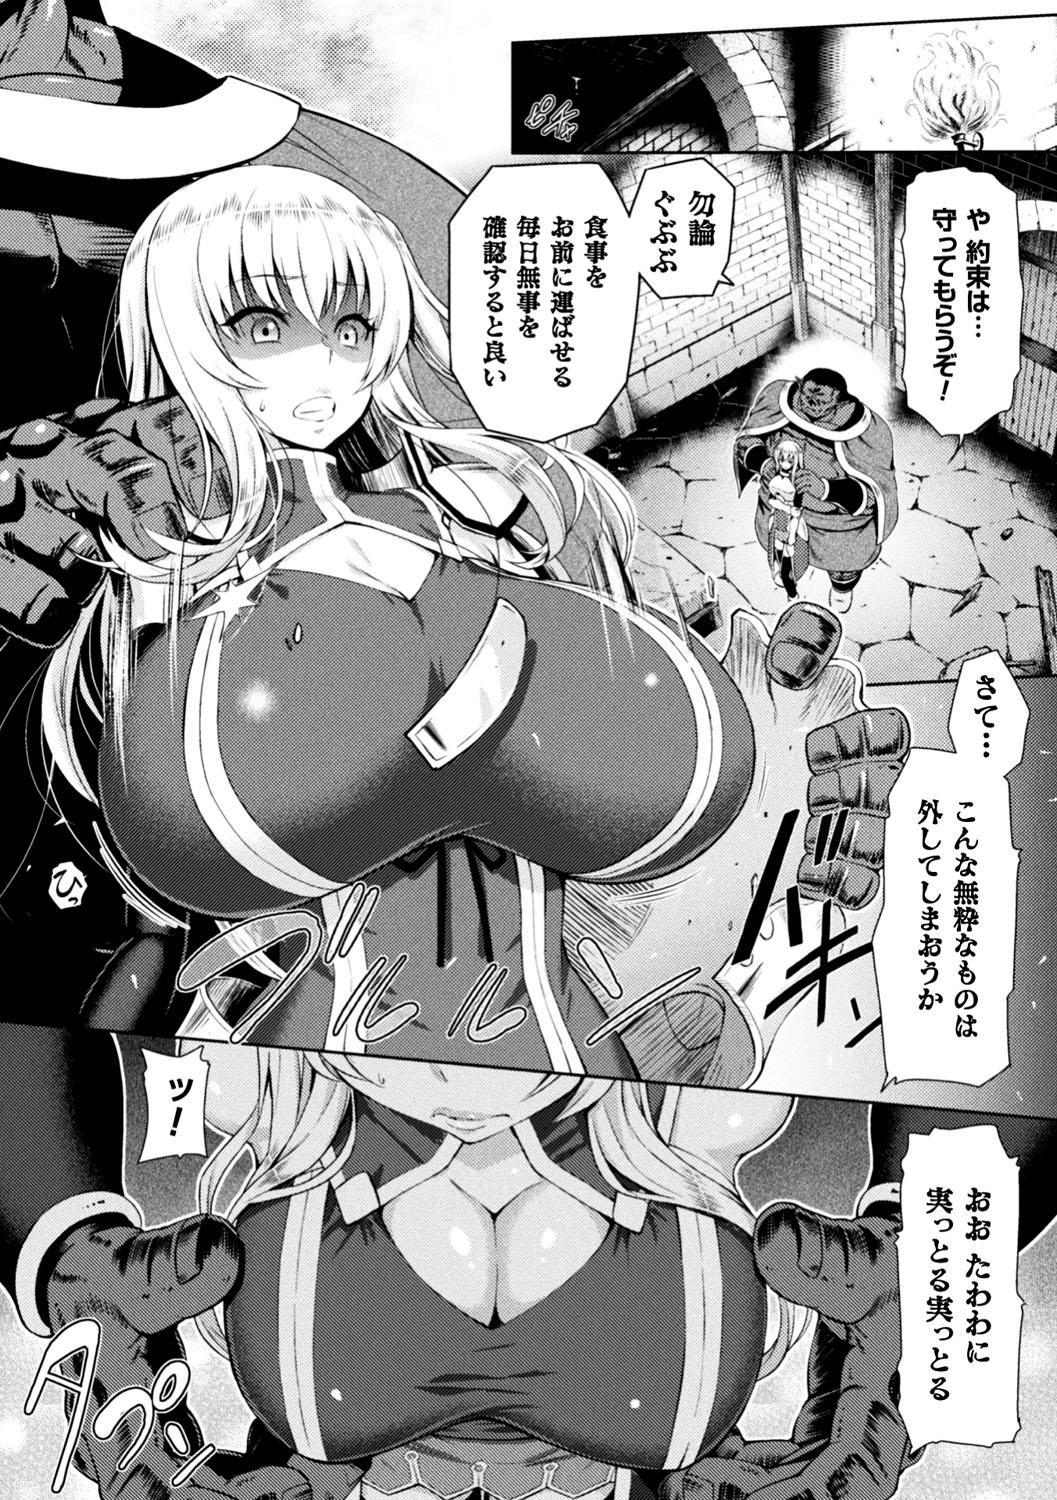 Seigi no Heroine Kangoku File Vol. 13 13